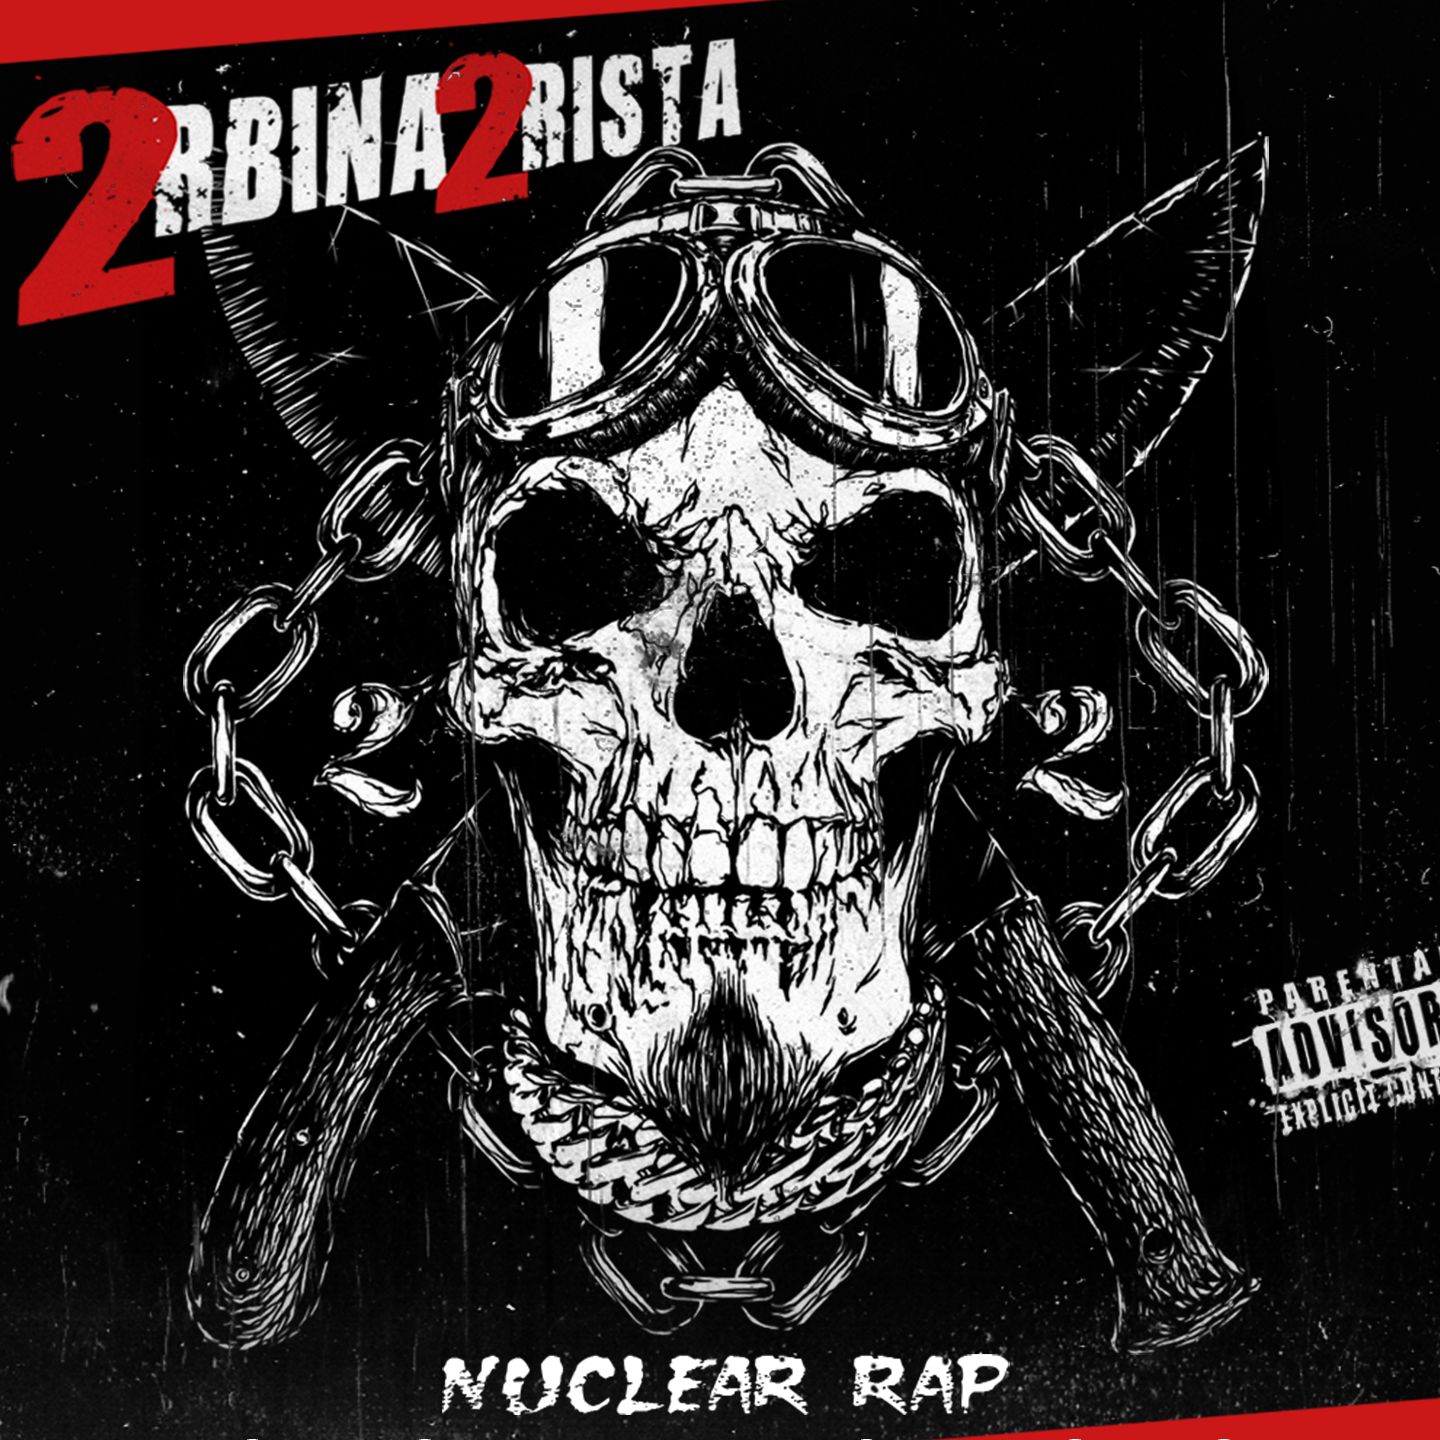 Nuclear Rap (ft. DJ Spot) фото 2rbina 2rista